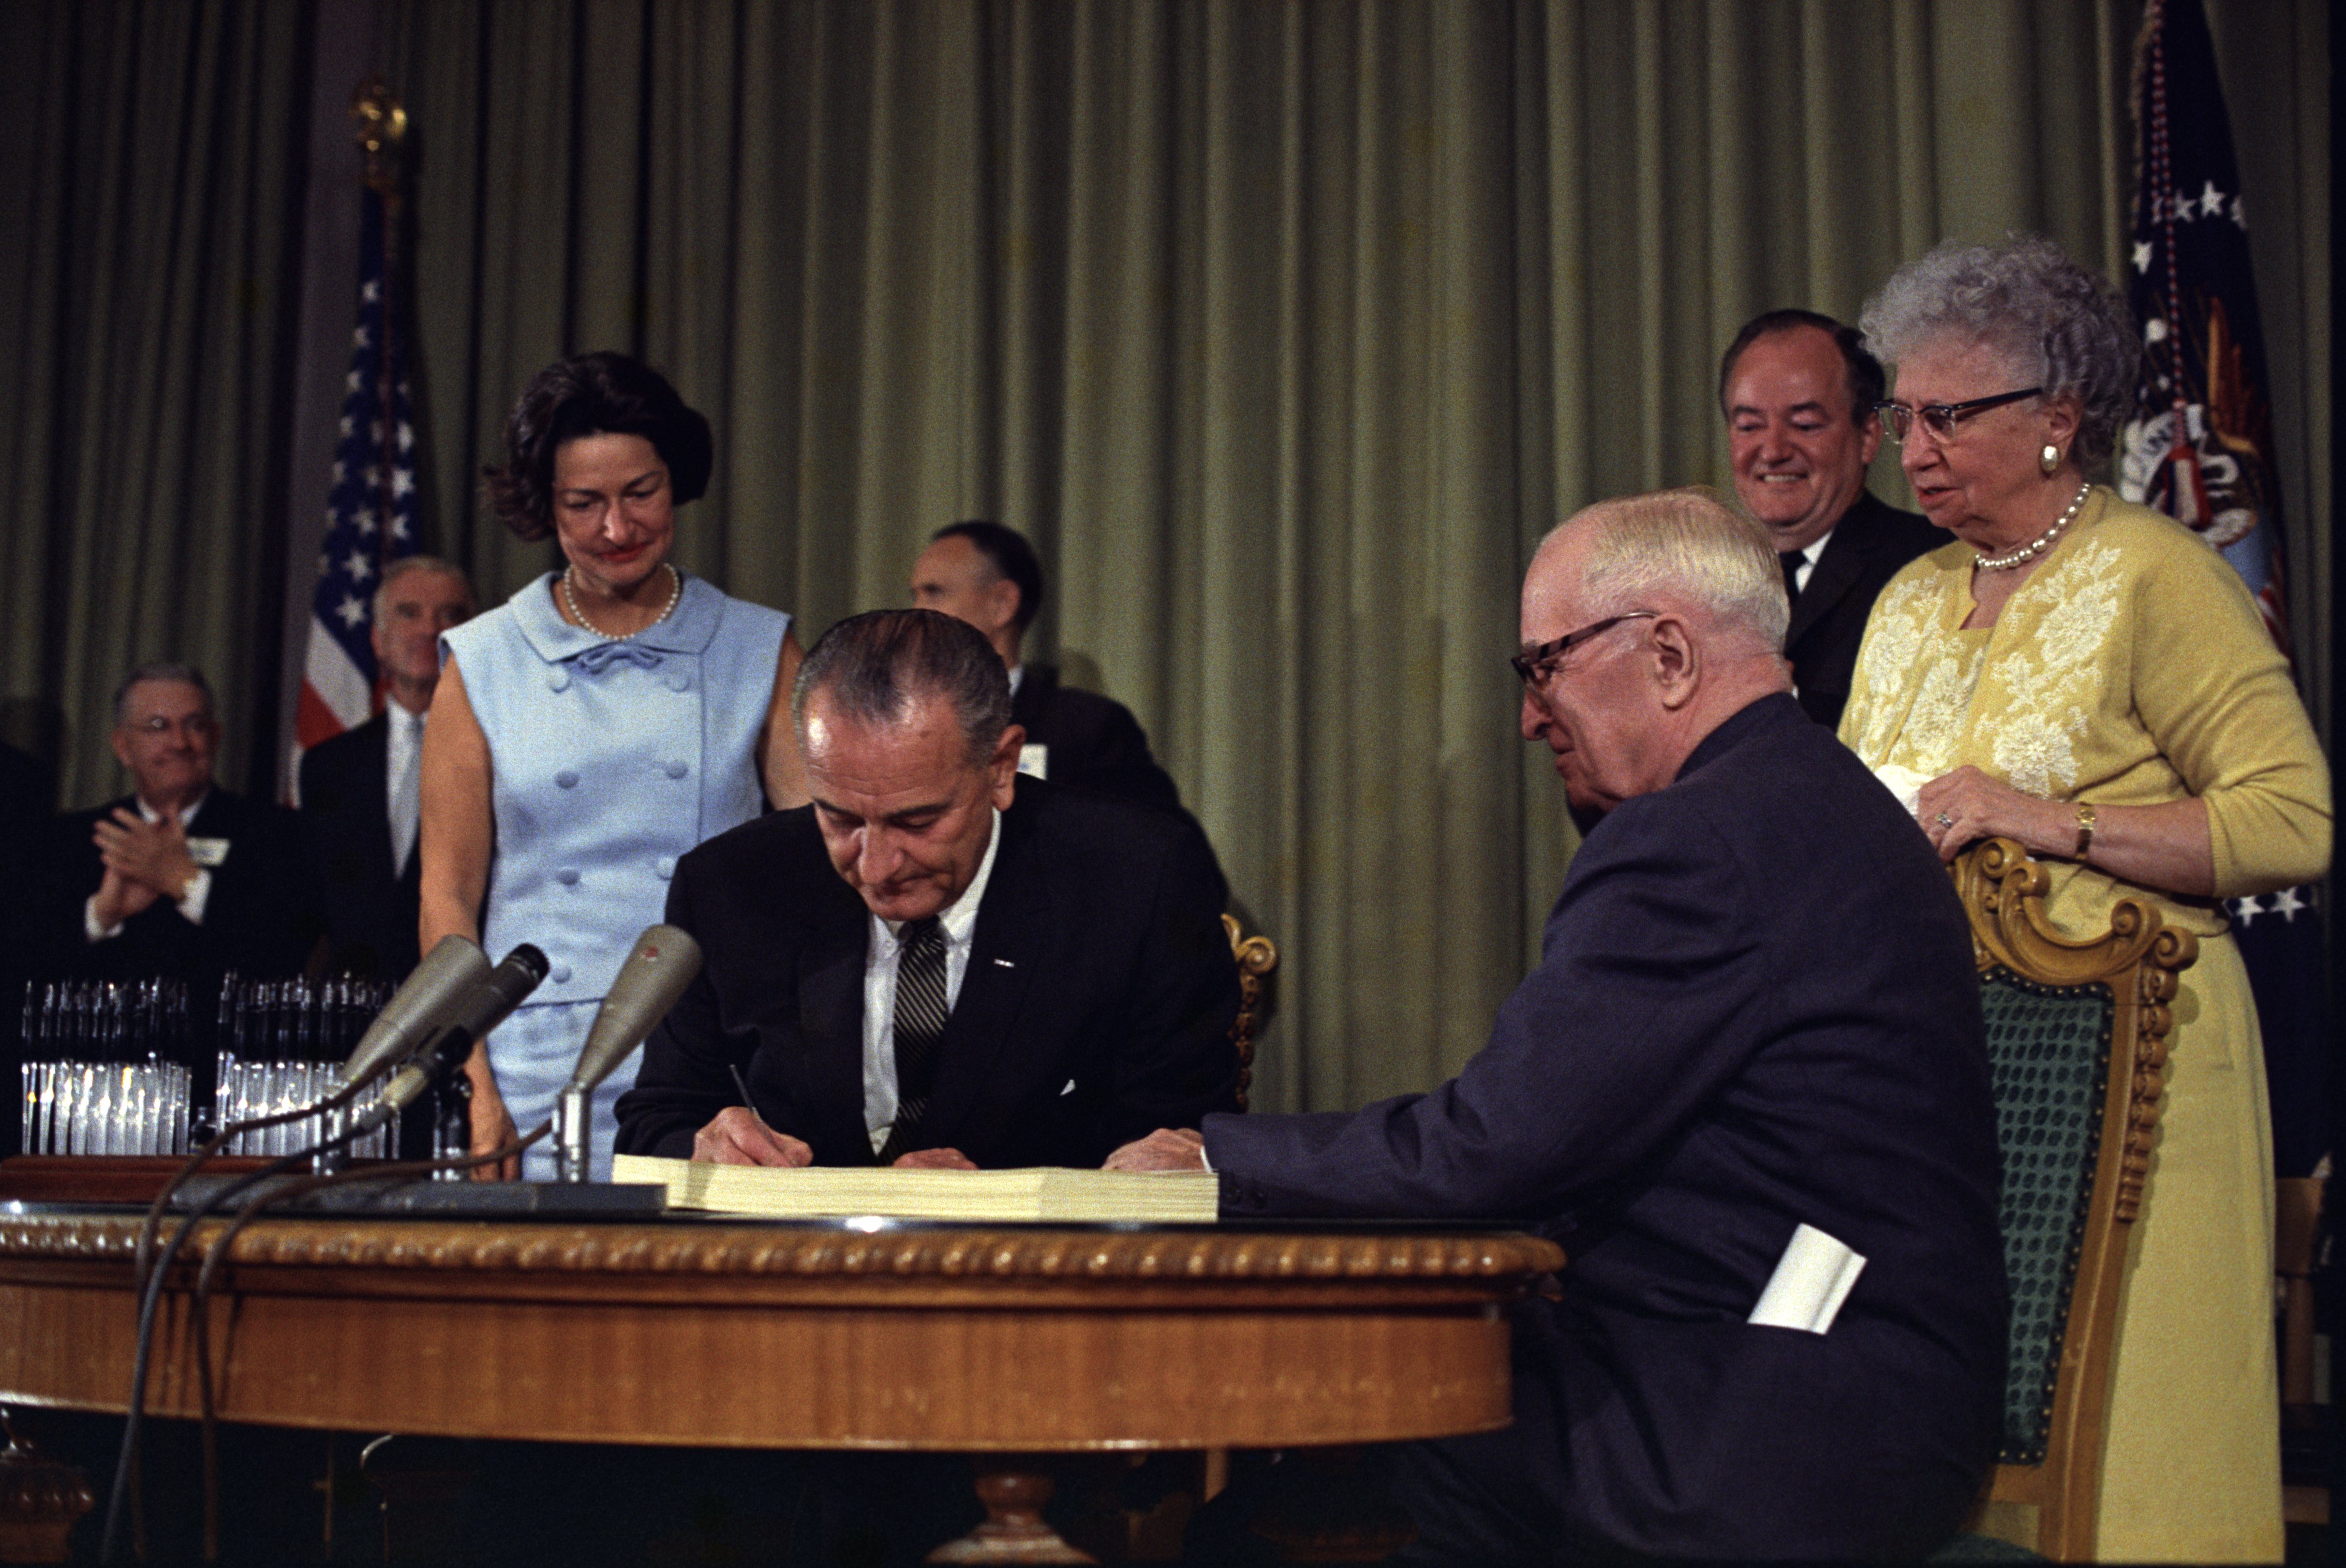 Lyndon_Johnson_signing_Medicare_bill,_with_Harry_Truman,_July_30,_1965.jpg